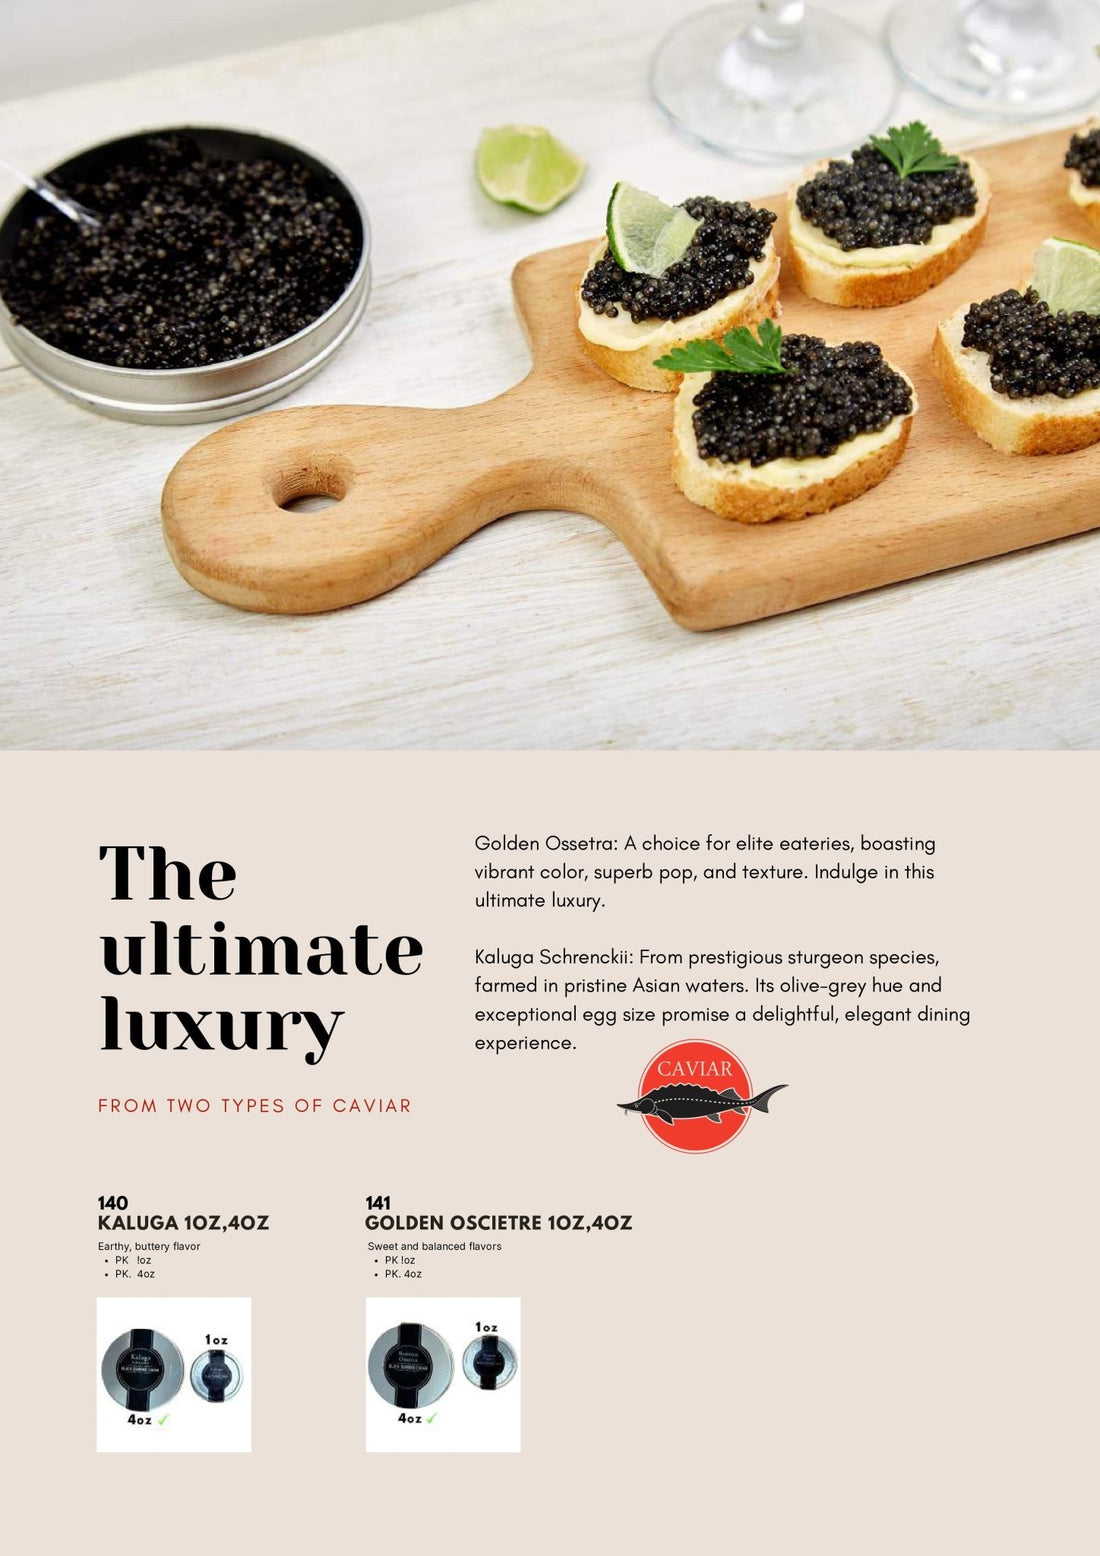 The Ultimate Luxury: Caviar